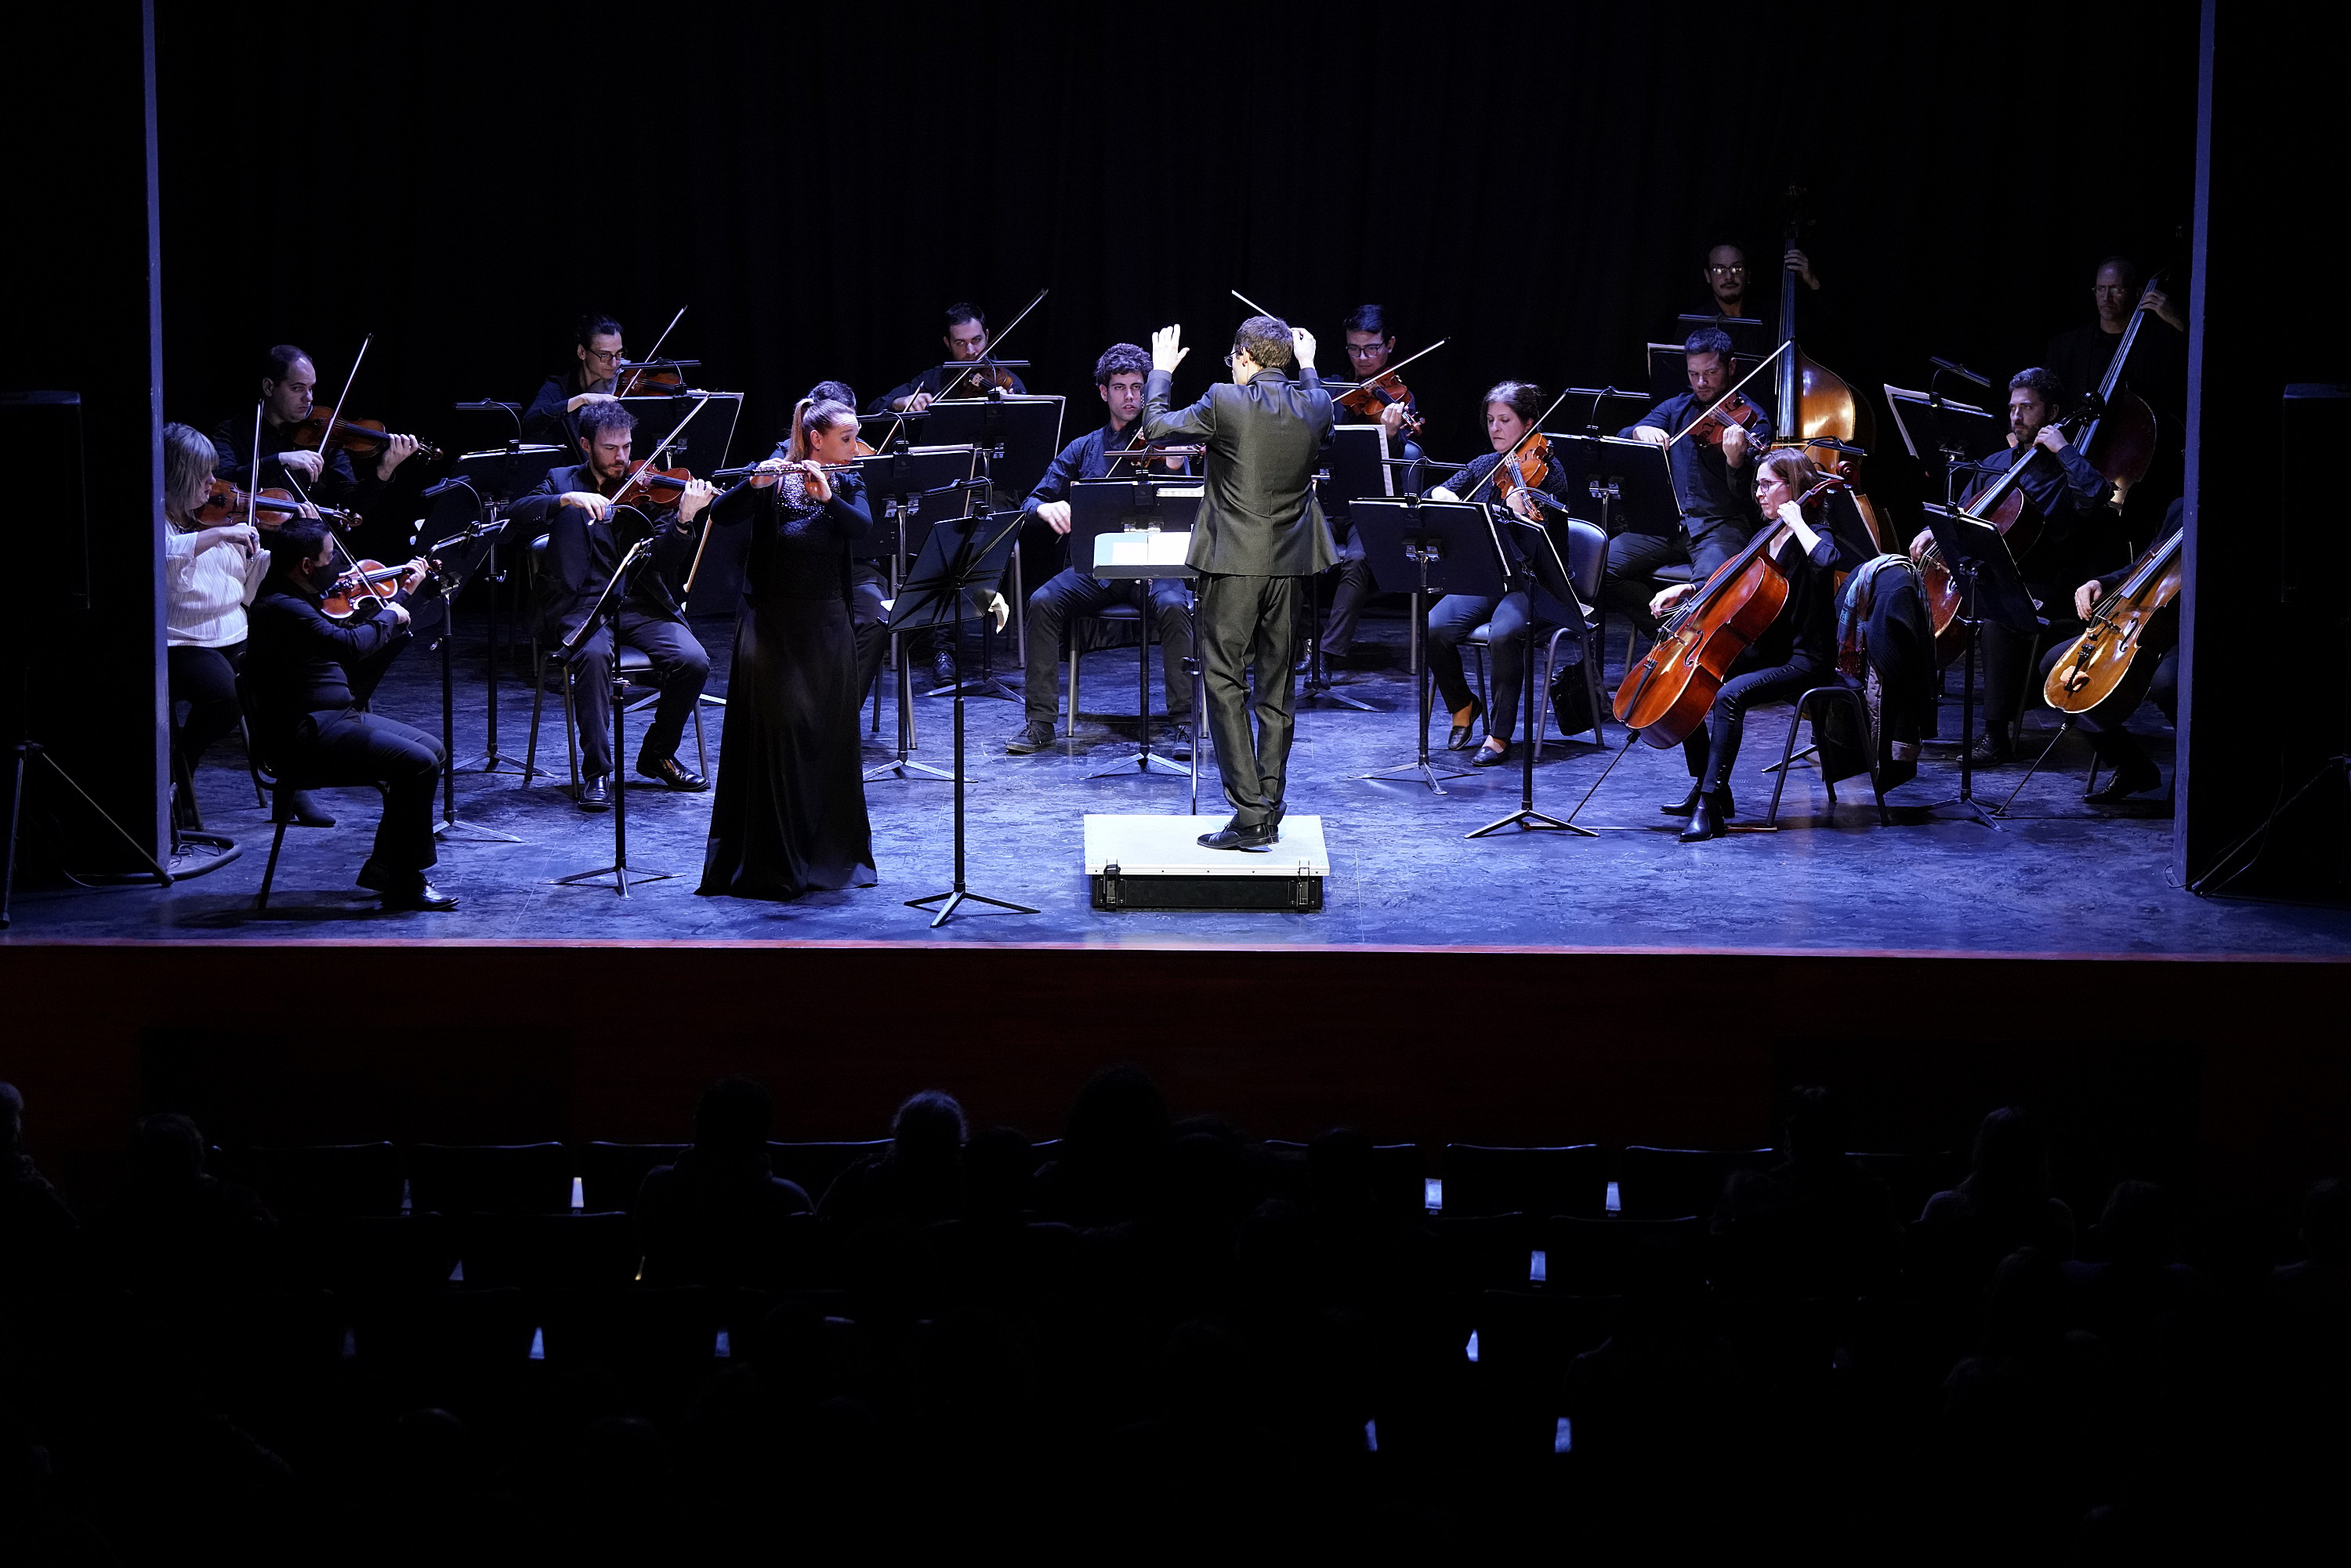 Concierto de la Orquesta Filarmónica de Montevideo en el Centro Cultural Artesano